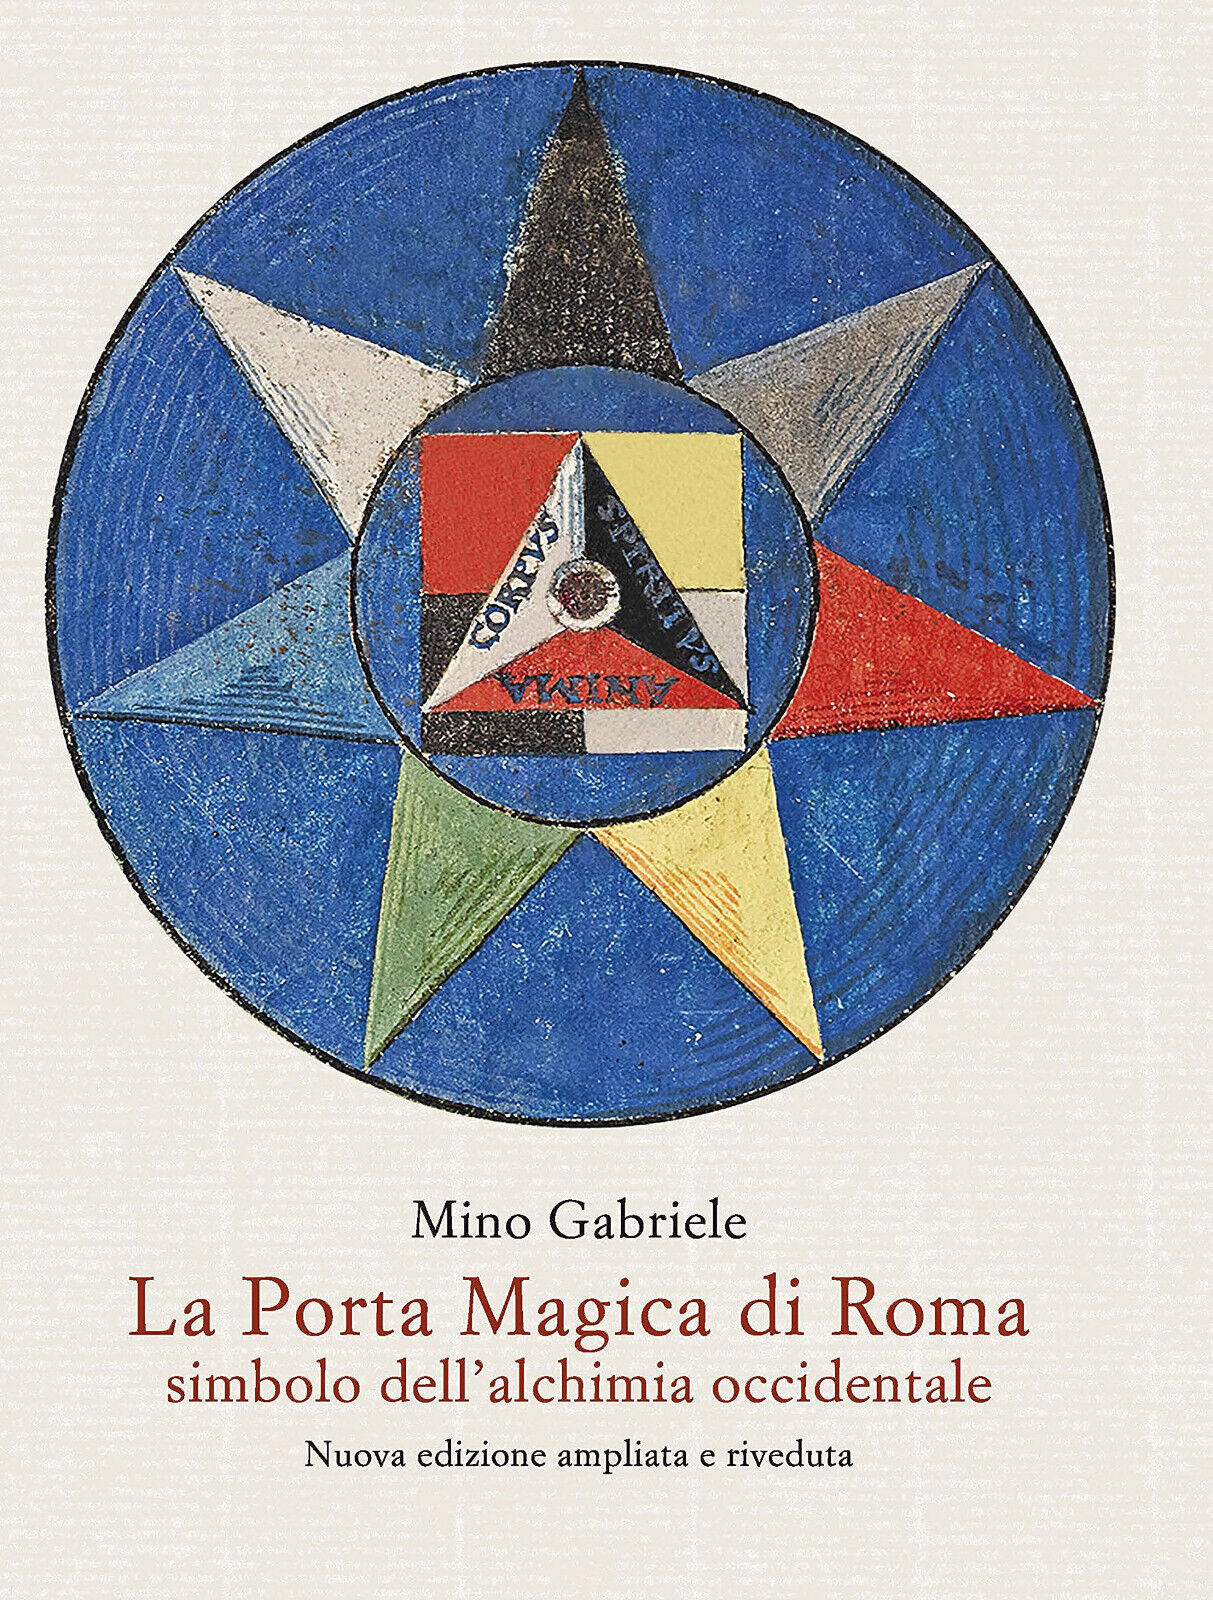 La Porta Magica di Roma Simbolo dell'alchimia occidentale - Mino Gabriele - 2021